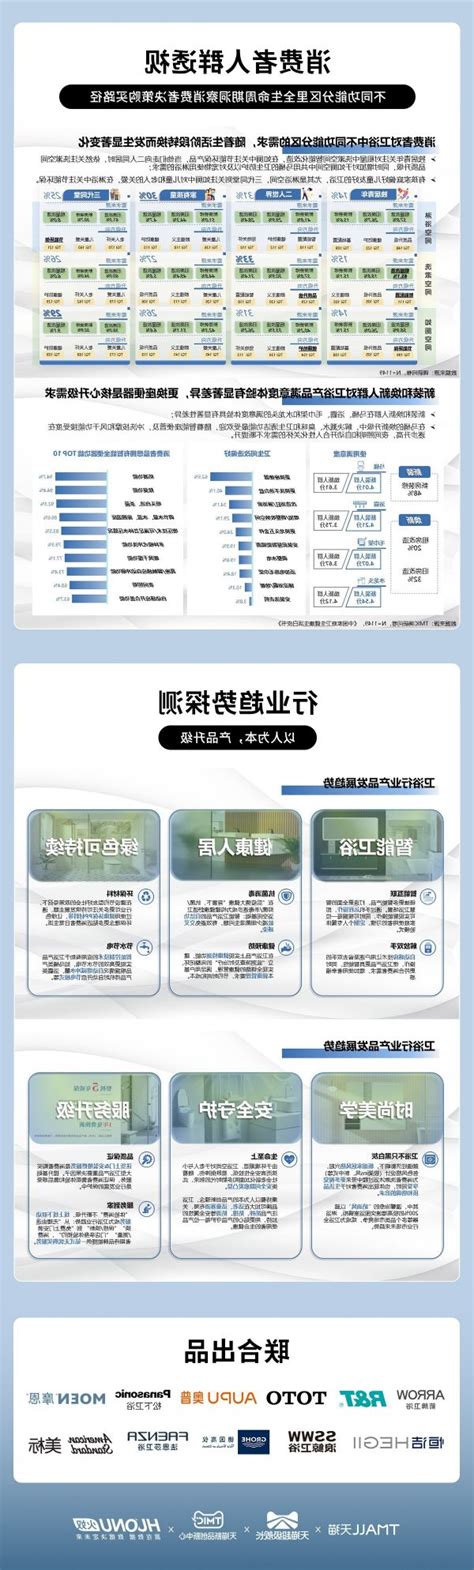 中国卫浴行业发展趋势分析与未来投资预测报告（2022-2029年）_观研报告网